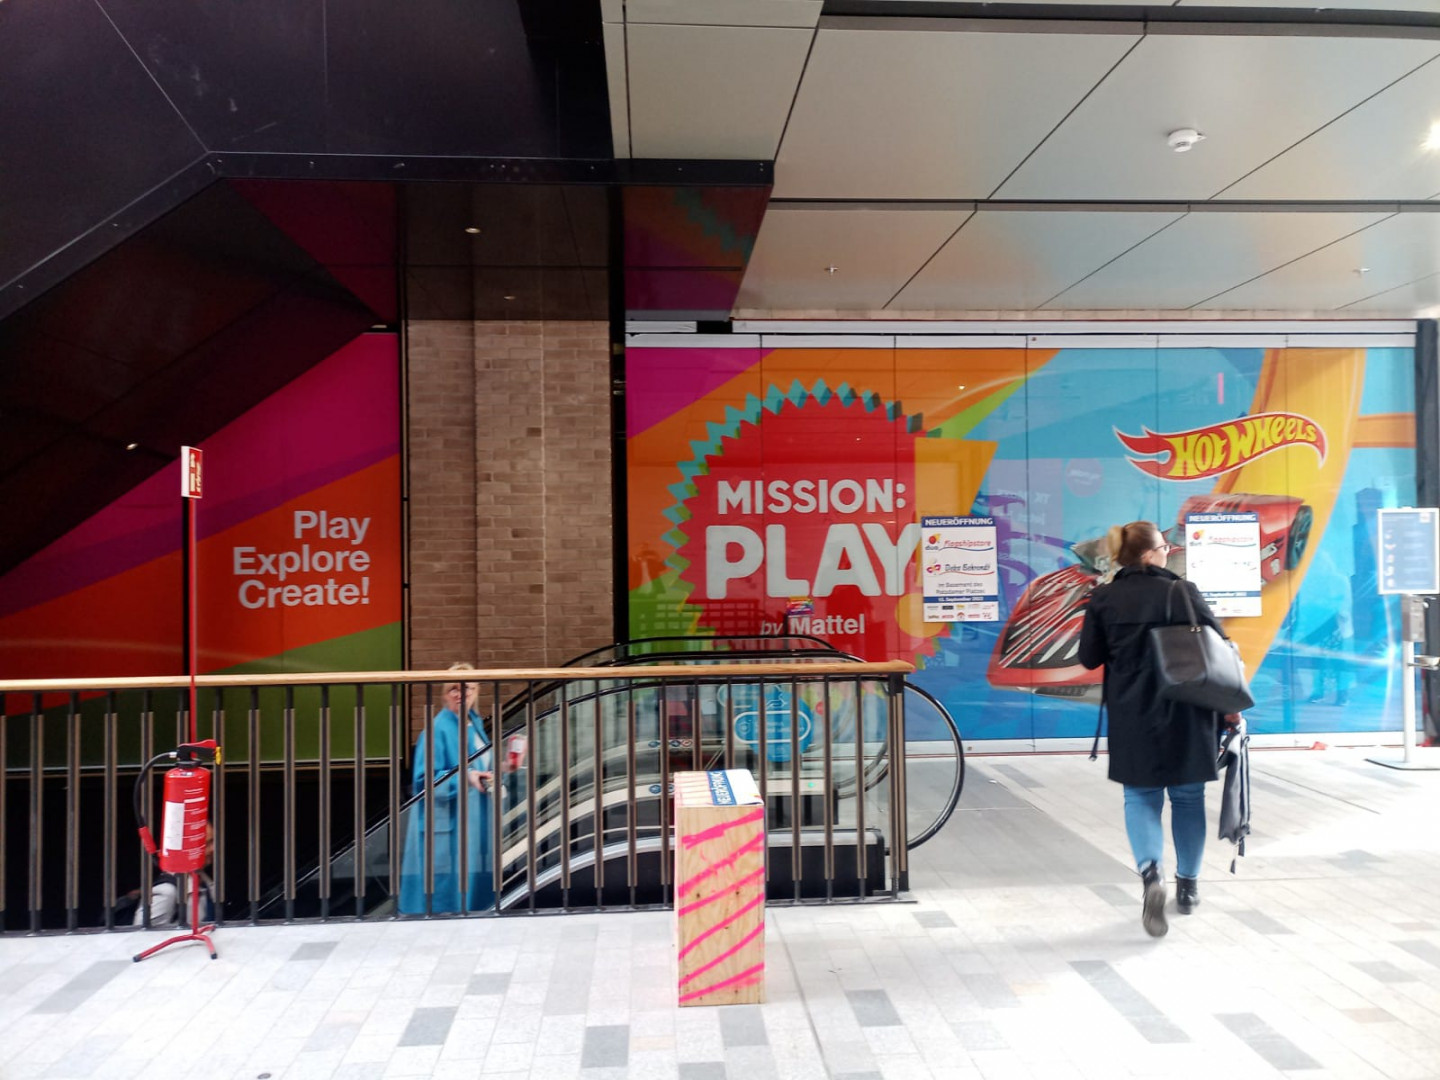 Nowy park rozrywki Mission:Play! by Mattel powstaje w znanej berlińskiej galerii handlowej Potsdamer Platz Arkaden, której część właśnie zmieniła nazwę na The Playce.Fot. Pracownia Finansowa.